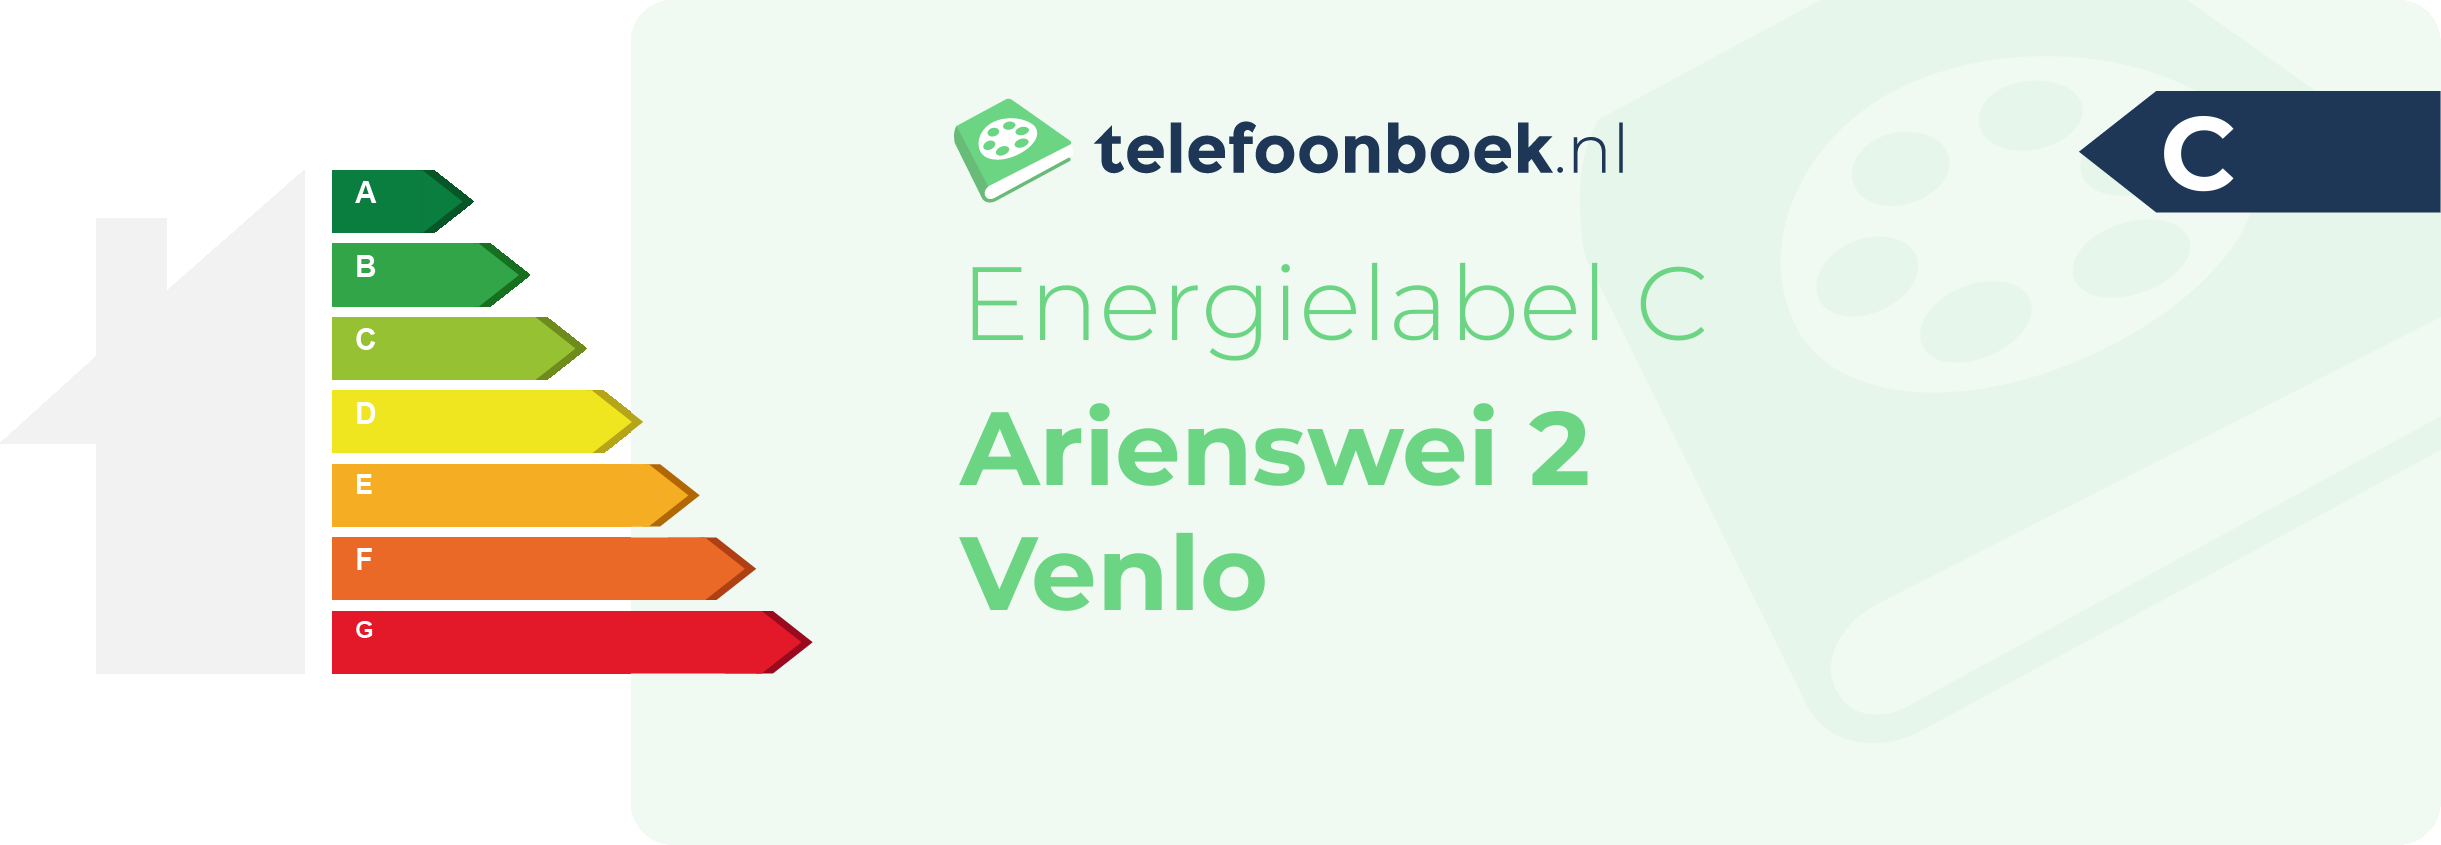 Energielabel Arienswei 2 Venlo